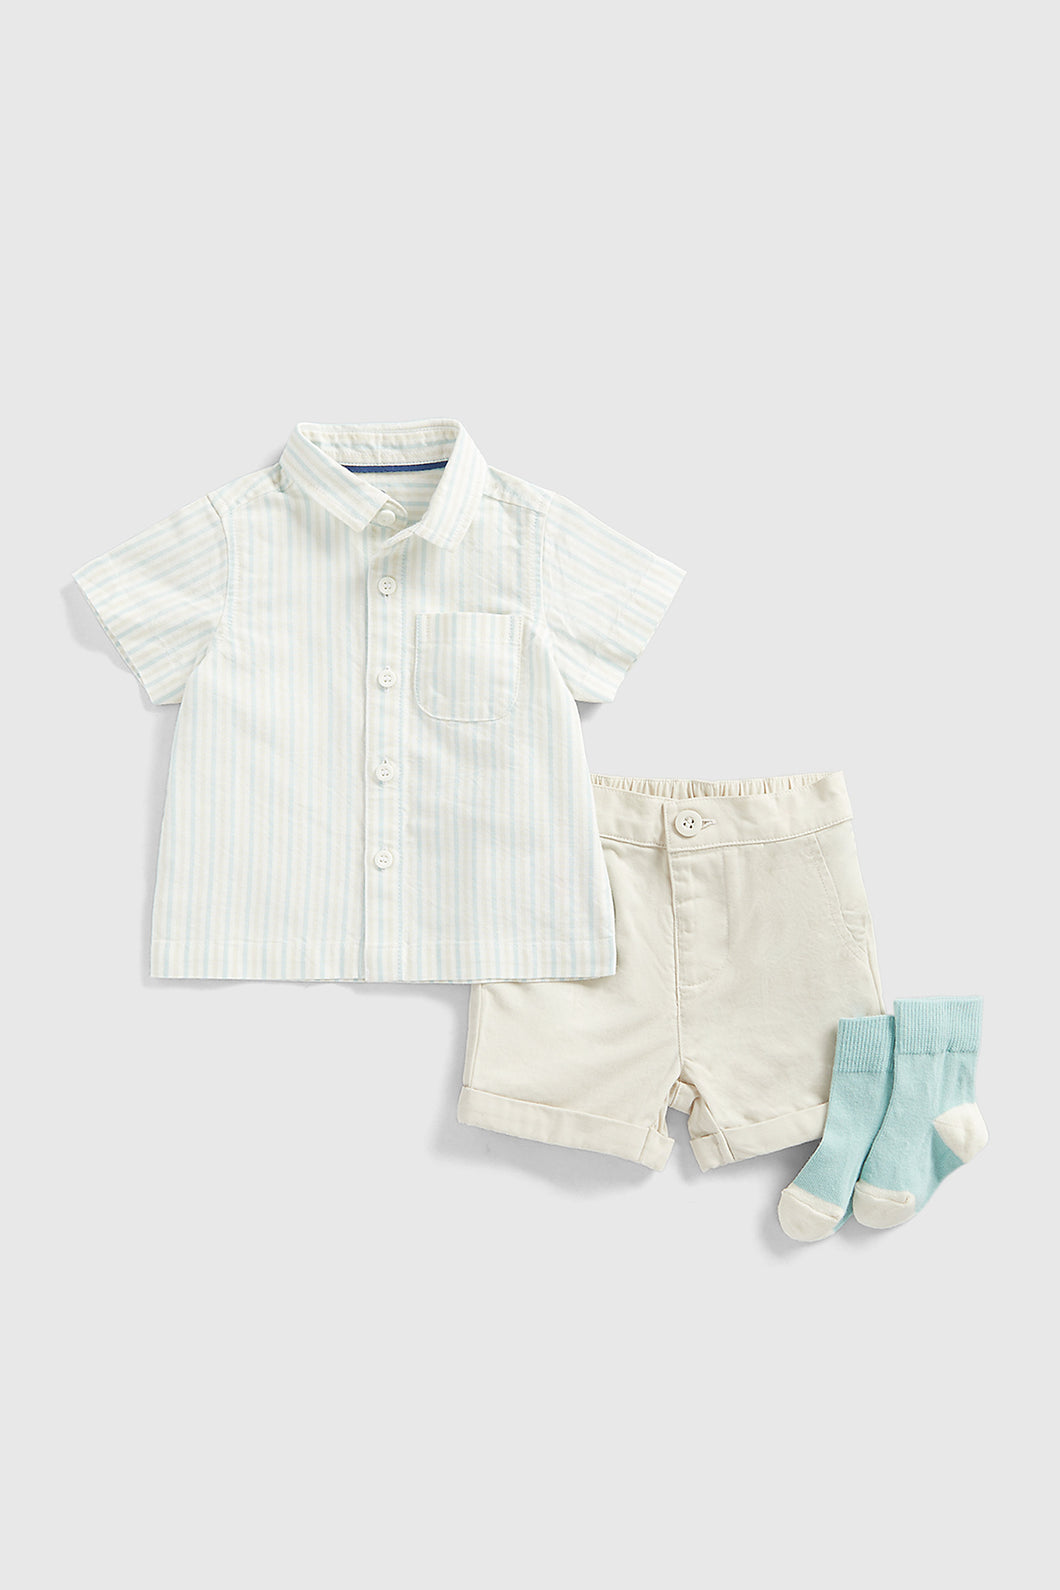 Mothercare Shorts, Shirt and Socks Set